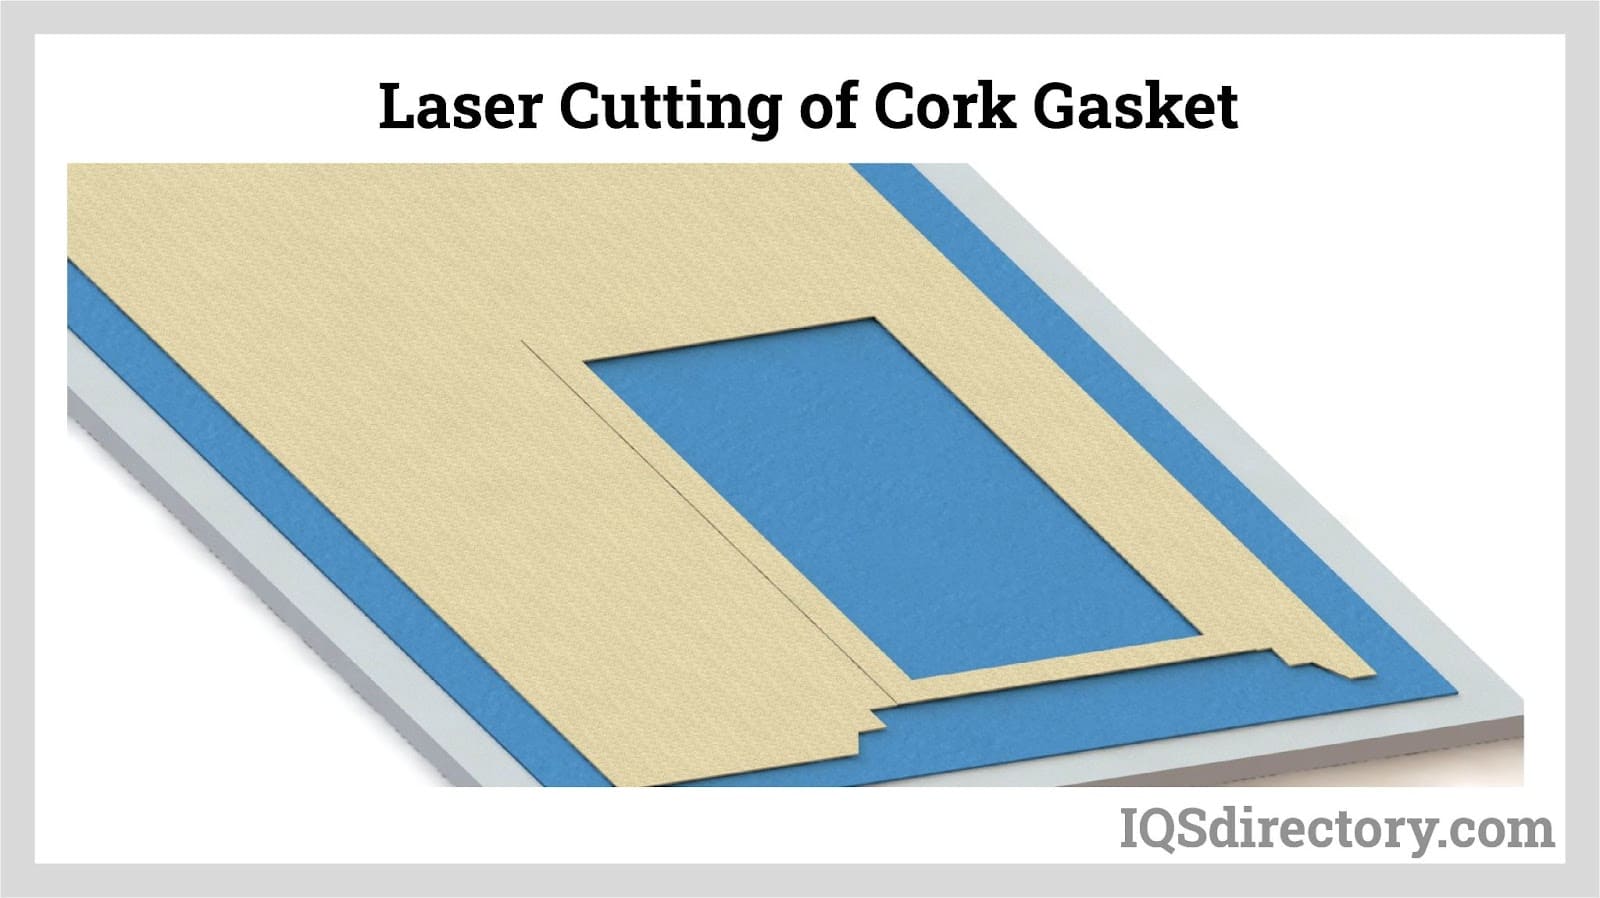 Laser Cutting of Cork Gasket